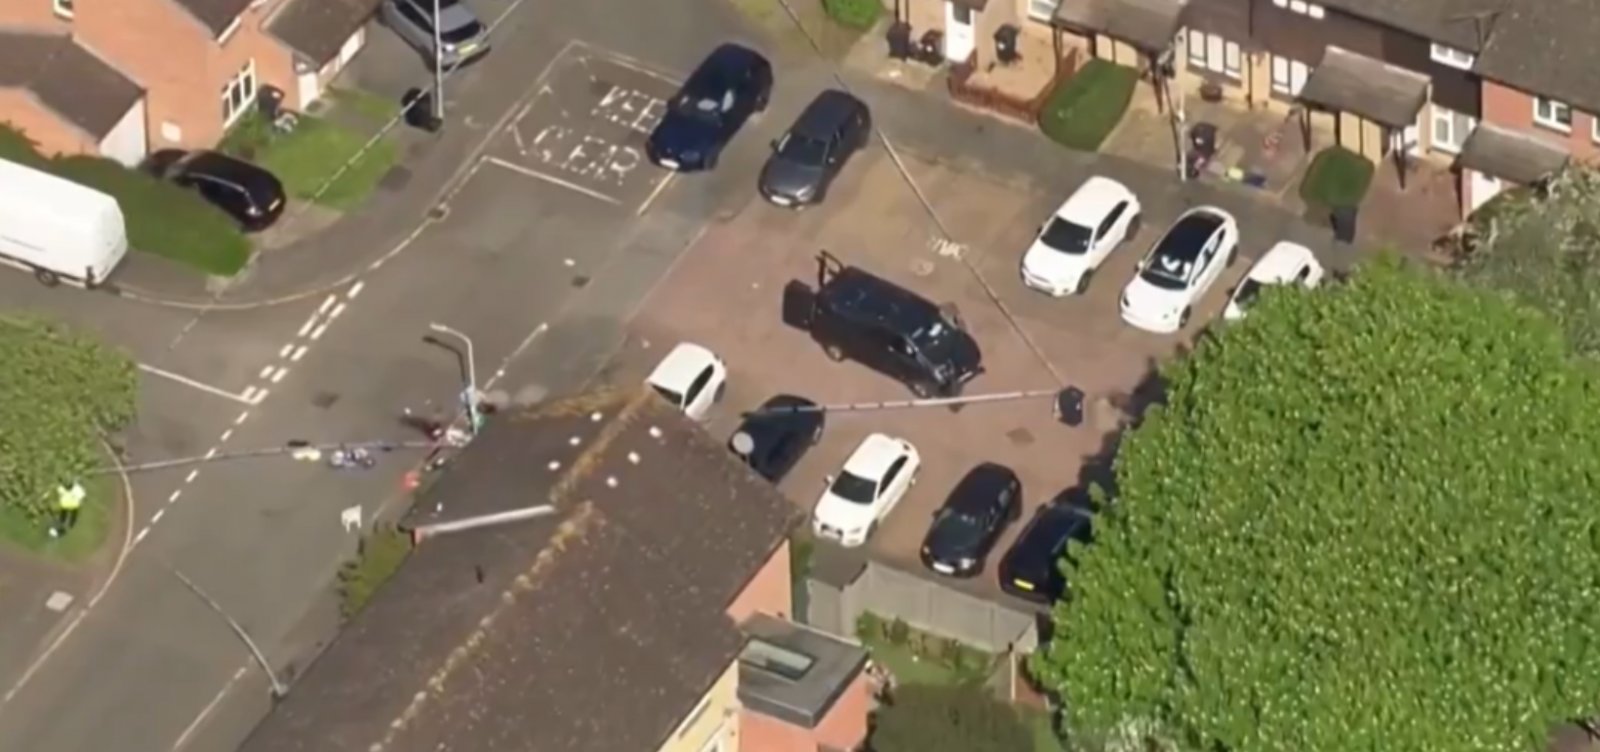 Homem ataca pessoas com espada em Londres, menino de 14 anos morre e outras quatro pessoas ficam feridas